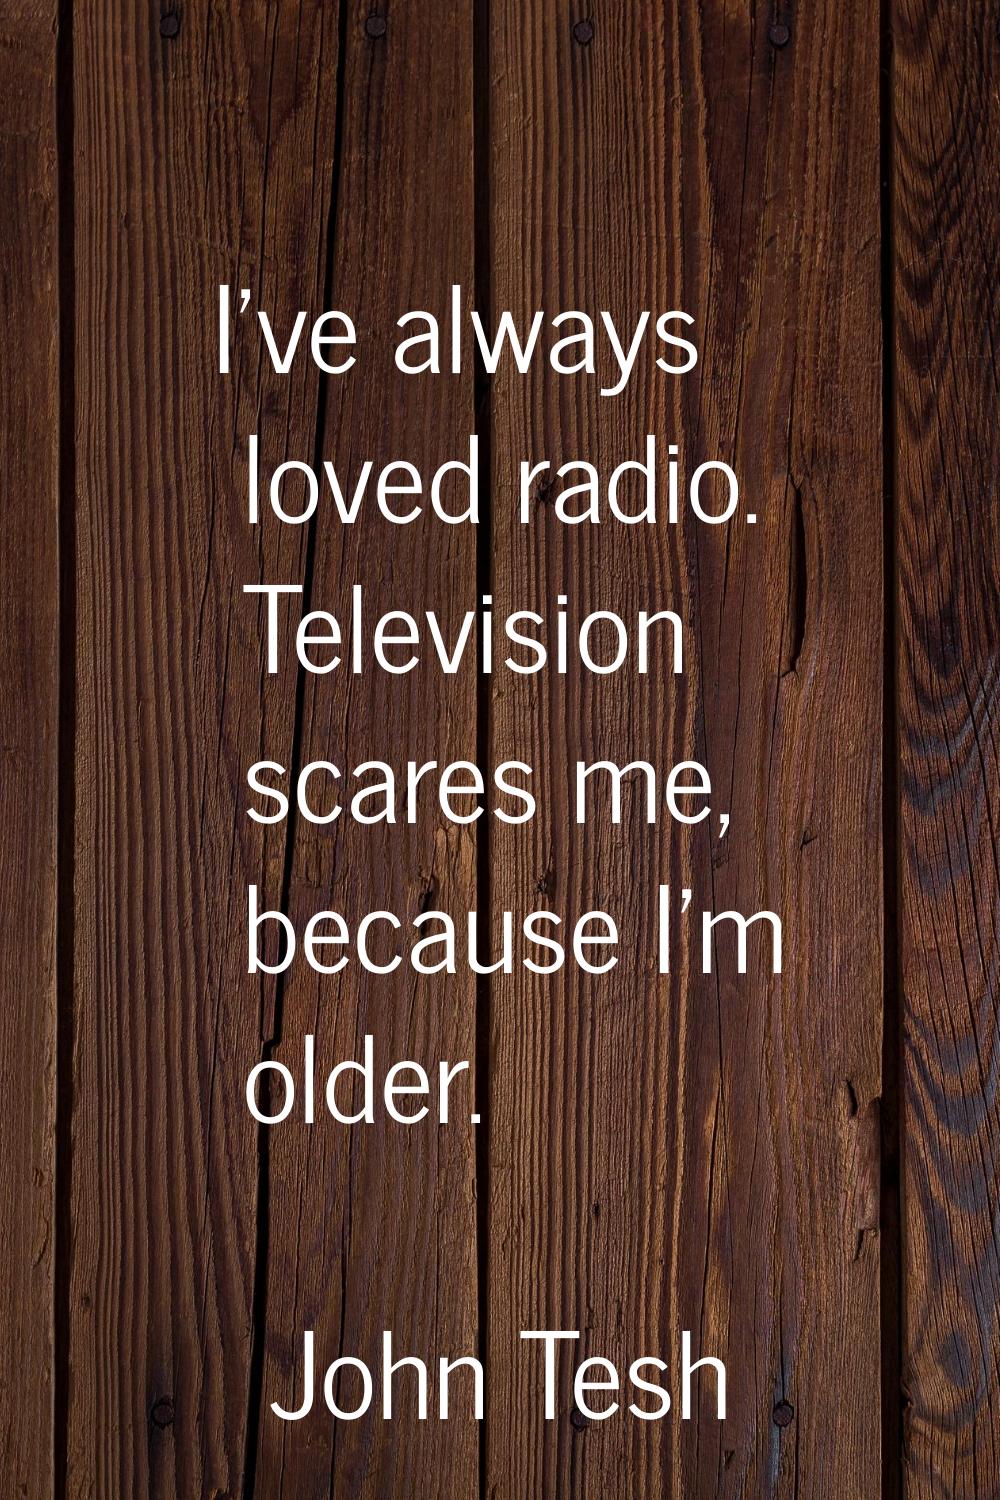 I've always loved radio. Television scares me, because I'm older.